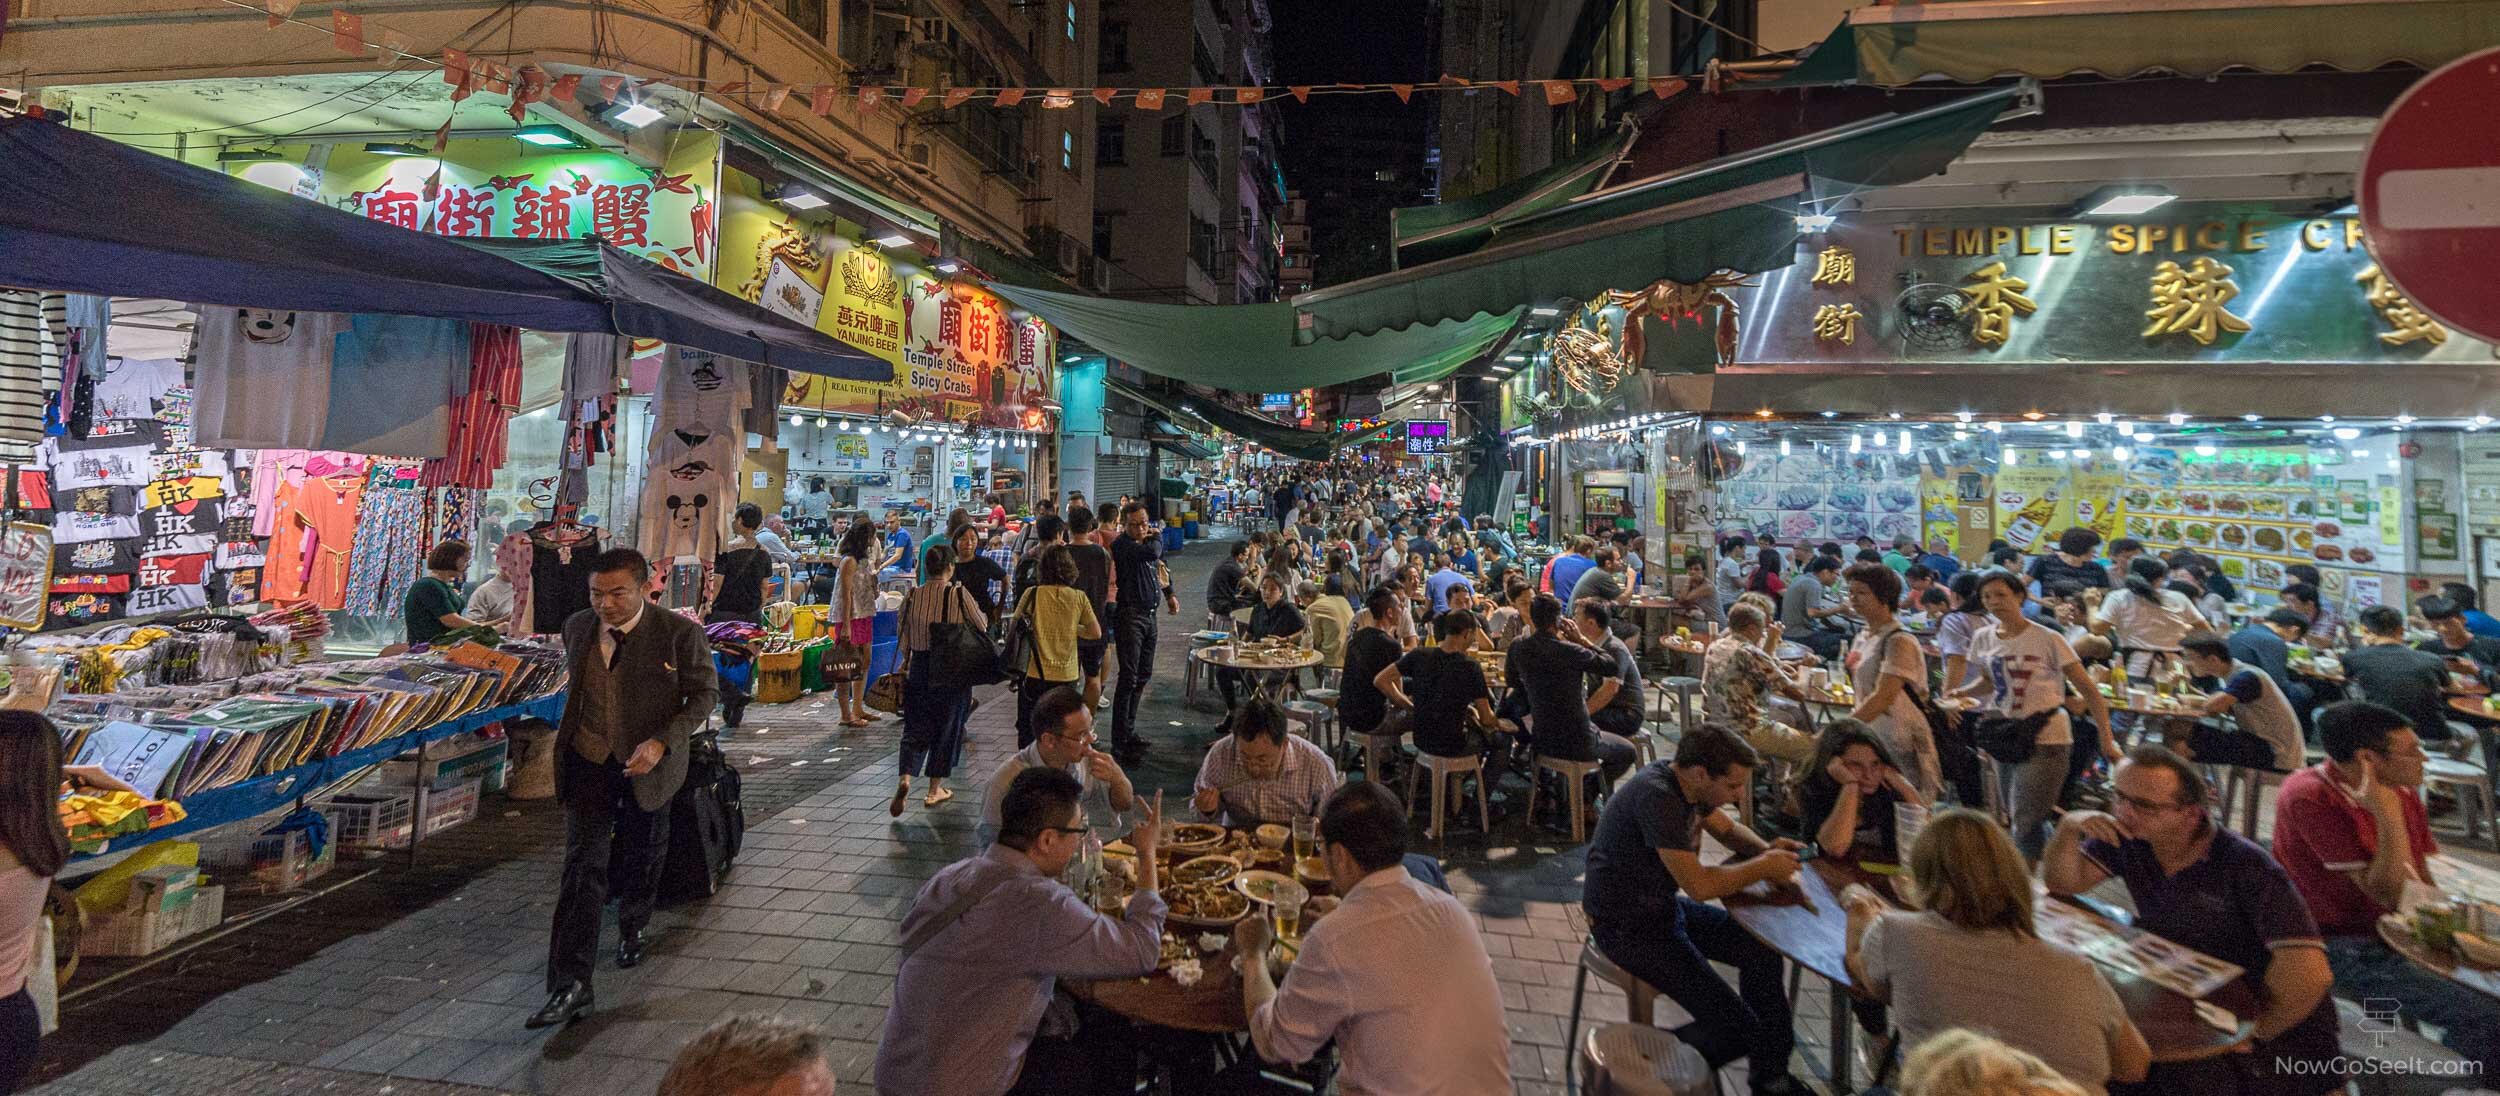 término análogo Monetario Incorrecto Temple Street Night Market, Hong Kong — Now Go See It - A Worldwide Travel  Blog